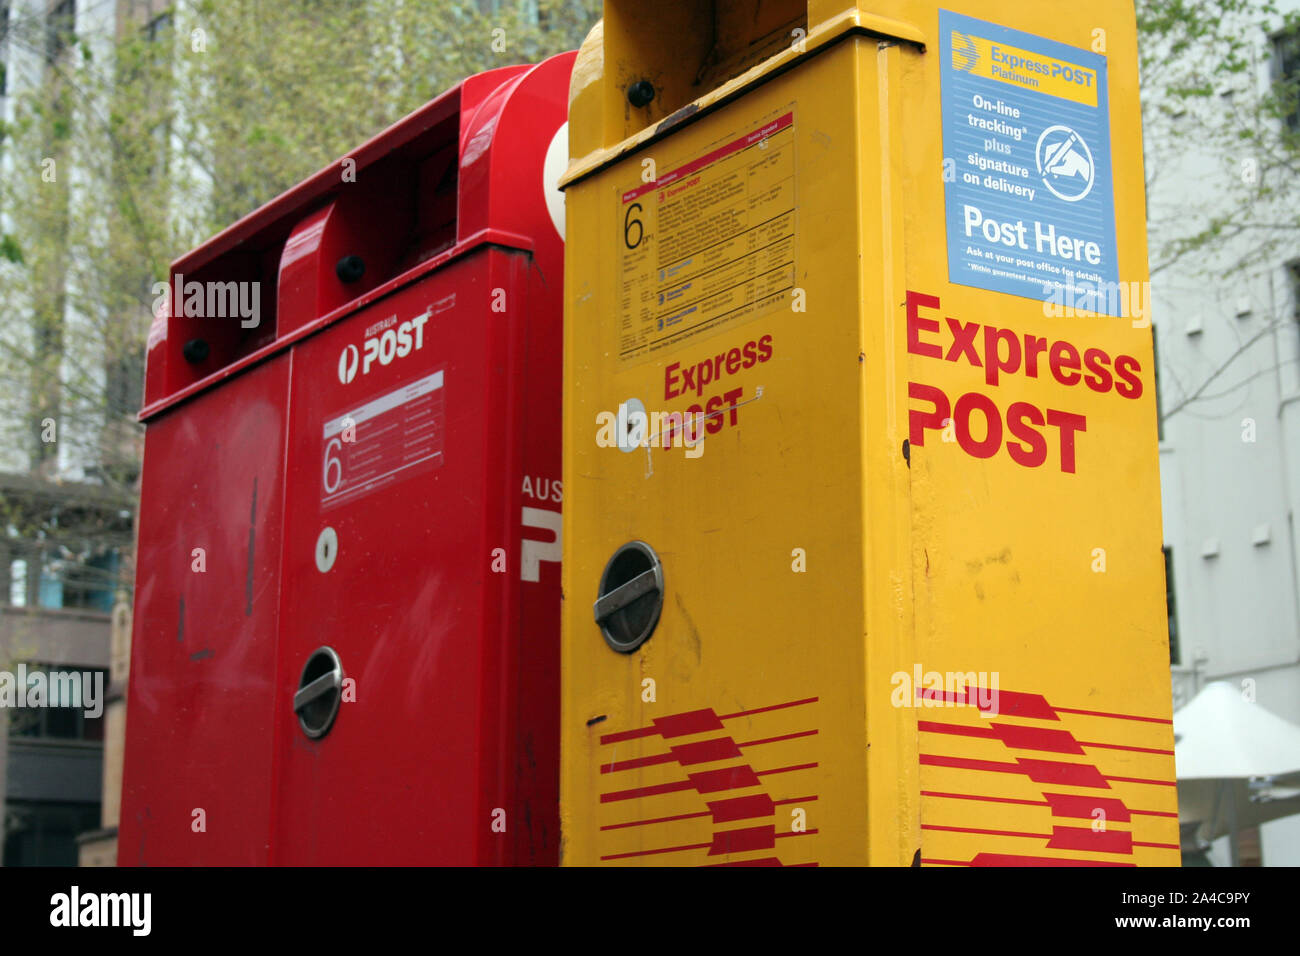 Del lado de la calle en Australia Post Mail boxes en la ciudad de Sydney, Australia. El rojo por correo normal y amarillo para expresar post (por la noche) Foto de stock